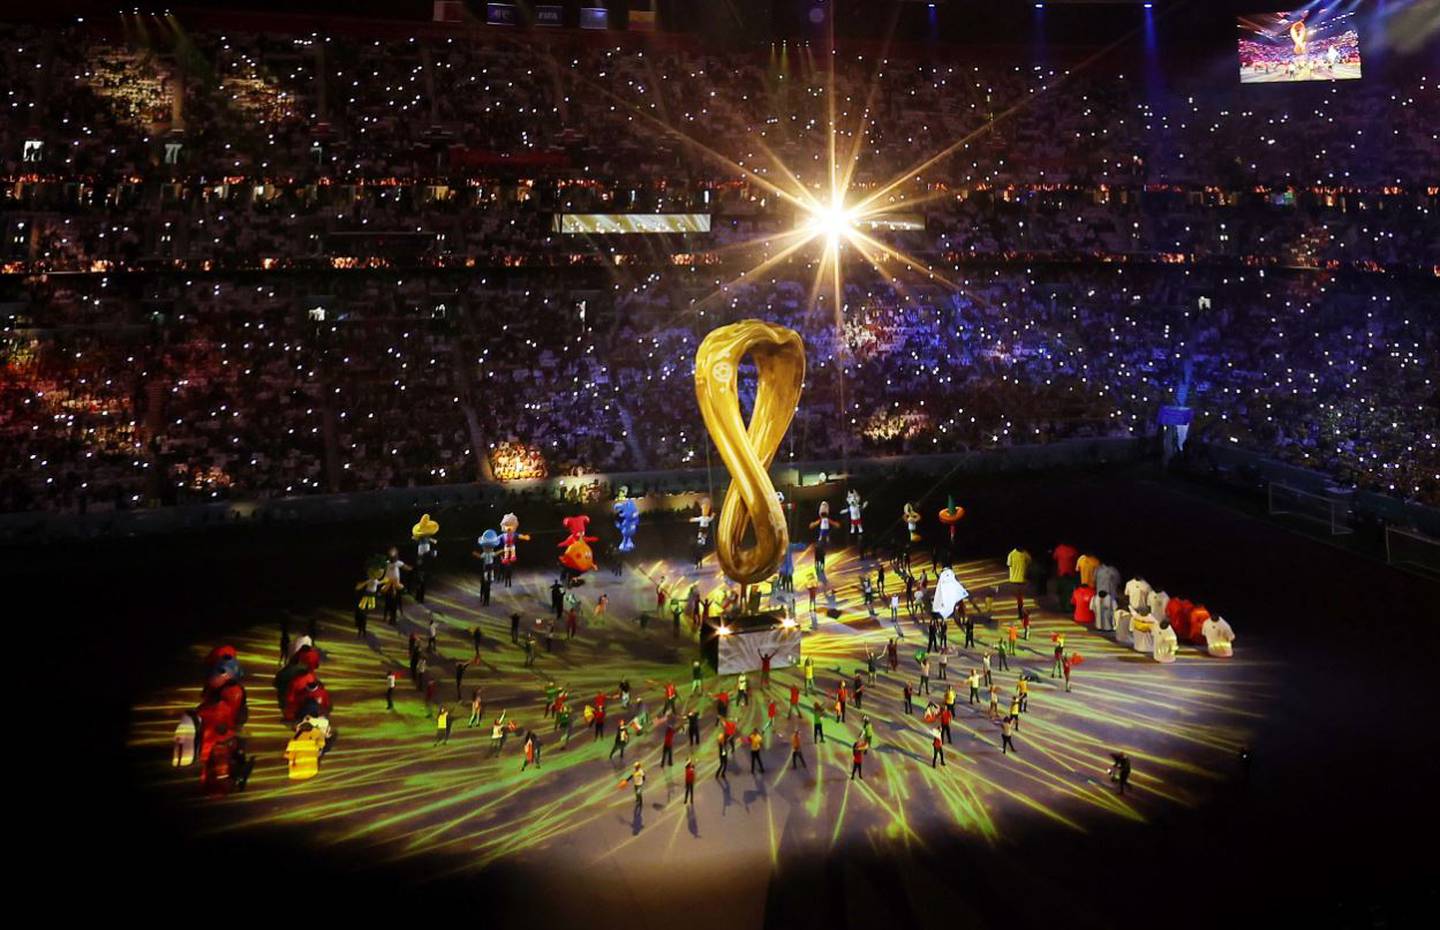 Juegos artificiales, música, mascotas y artistas fueron parte del arranque de la Copa del Mundo.